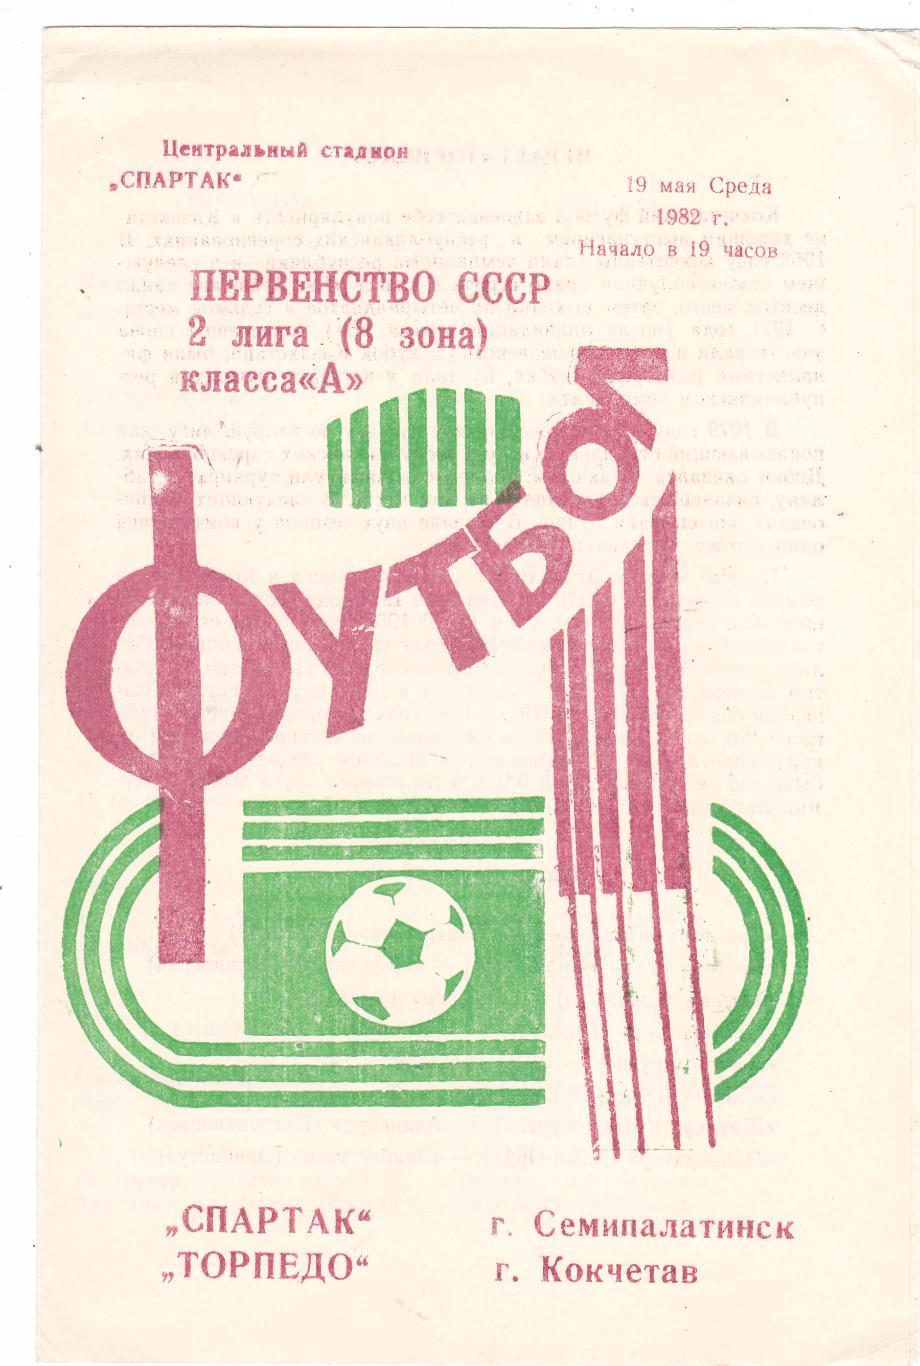 Спартак (Семипалатинск) - Торпедо (Кокчетав) 19.05.1982